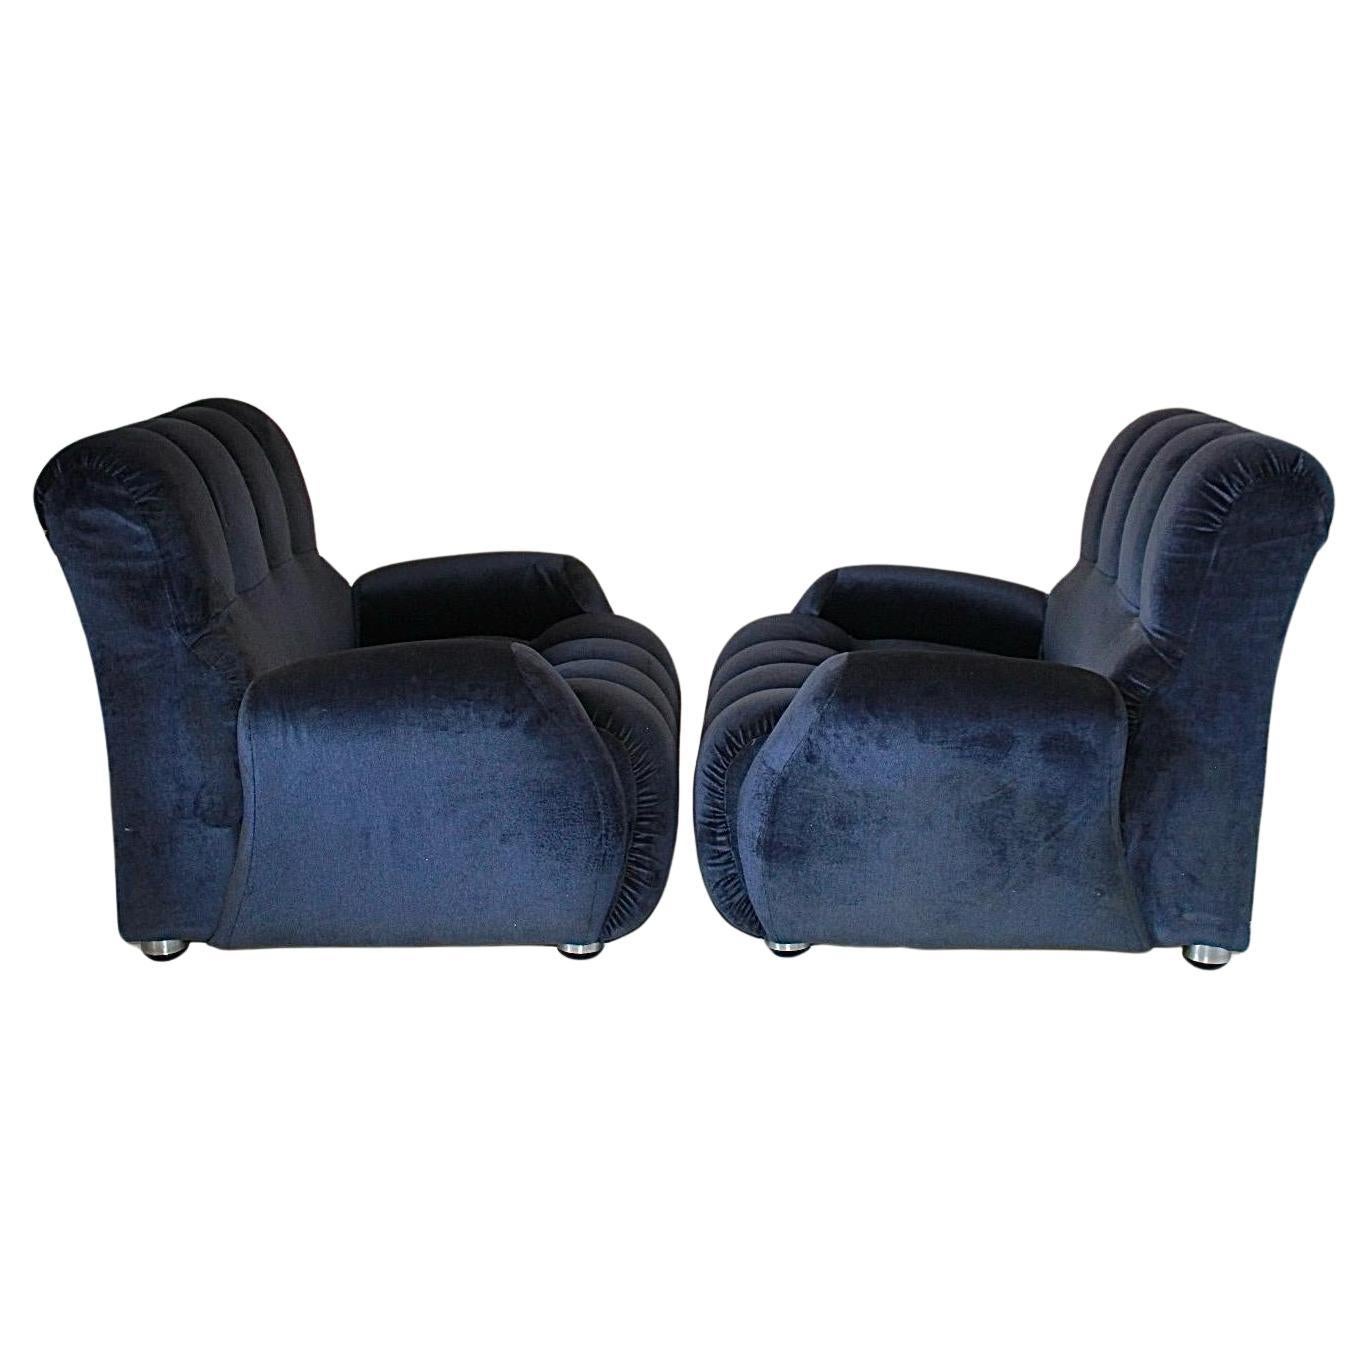 Vintage Velvet Blue Lounge Chairs, Satz von zwei, hergestellt in Italien in den 1980er Jahren
Eine schöne 1980 's Paar blauer Samt Vintage-Sessel. In Italien hergestelltes Designerstück mit elegantem Samtmuster und verchromten Füßen. Typischer Stil